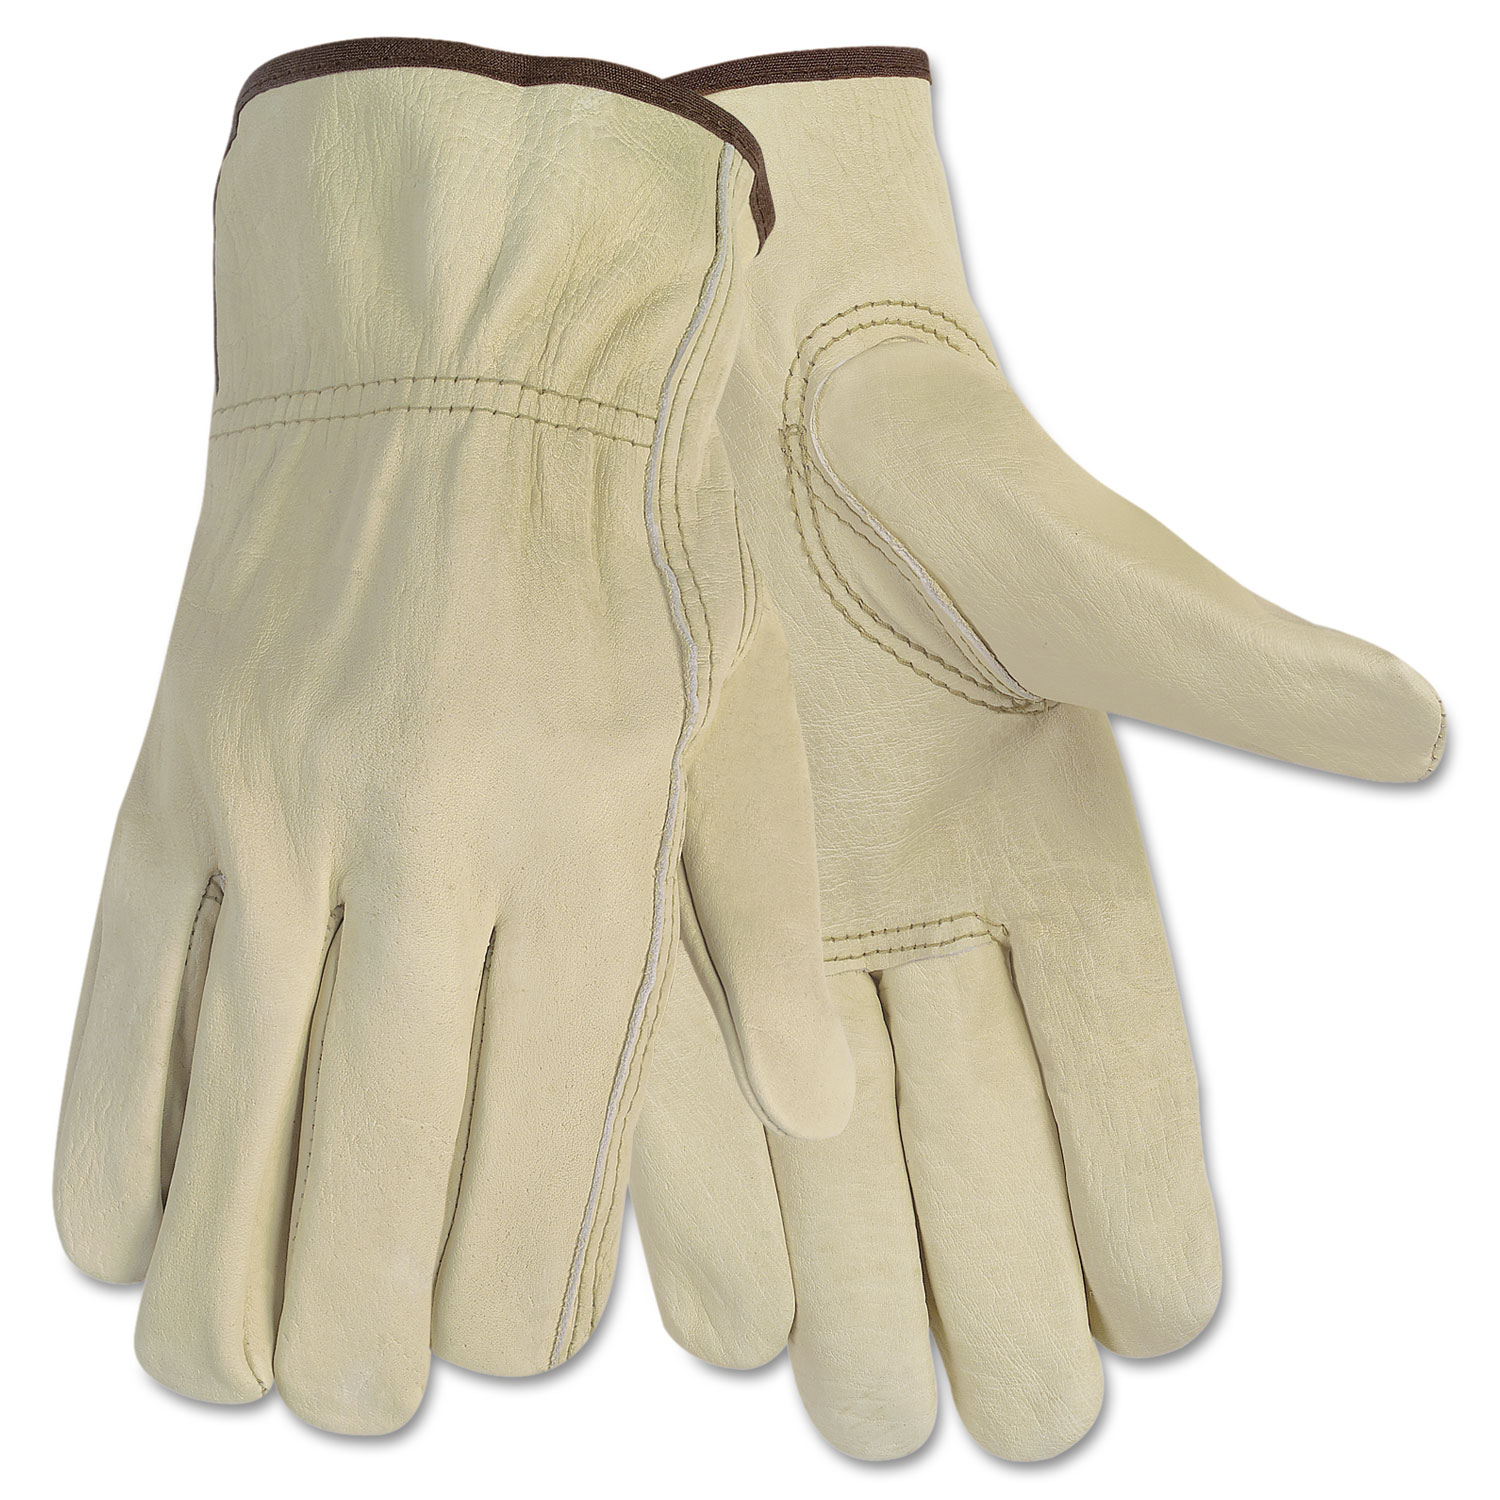  MCR Safety 3215M Economy Leather Driver Gloves, Medium, Beige, Pair (CRW3215M) 